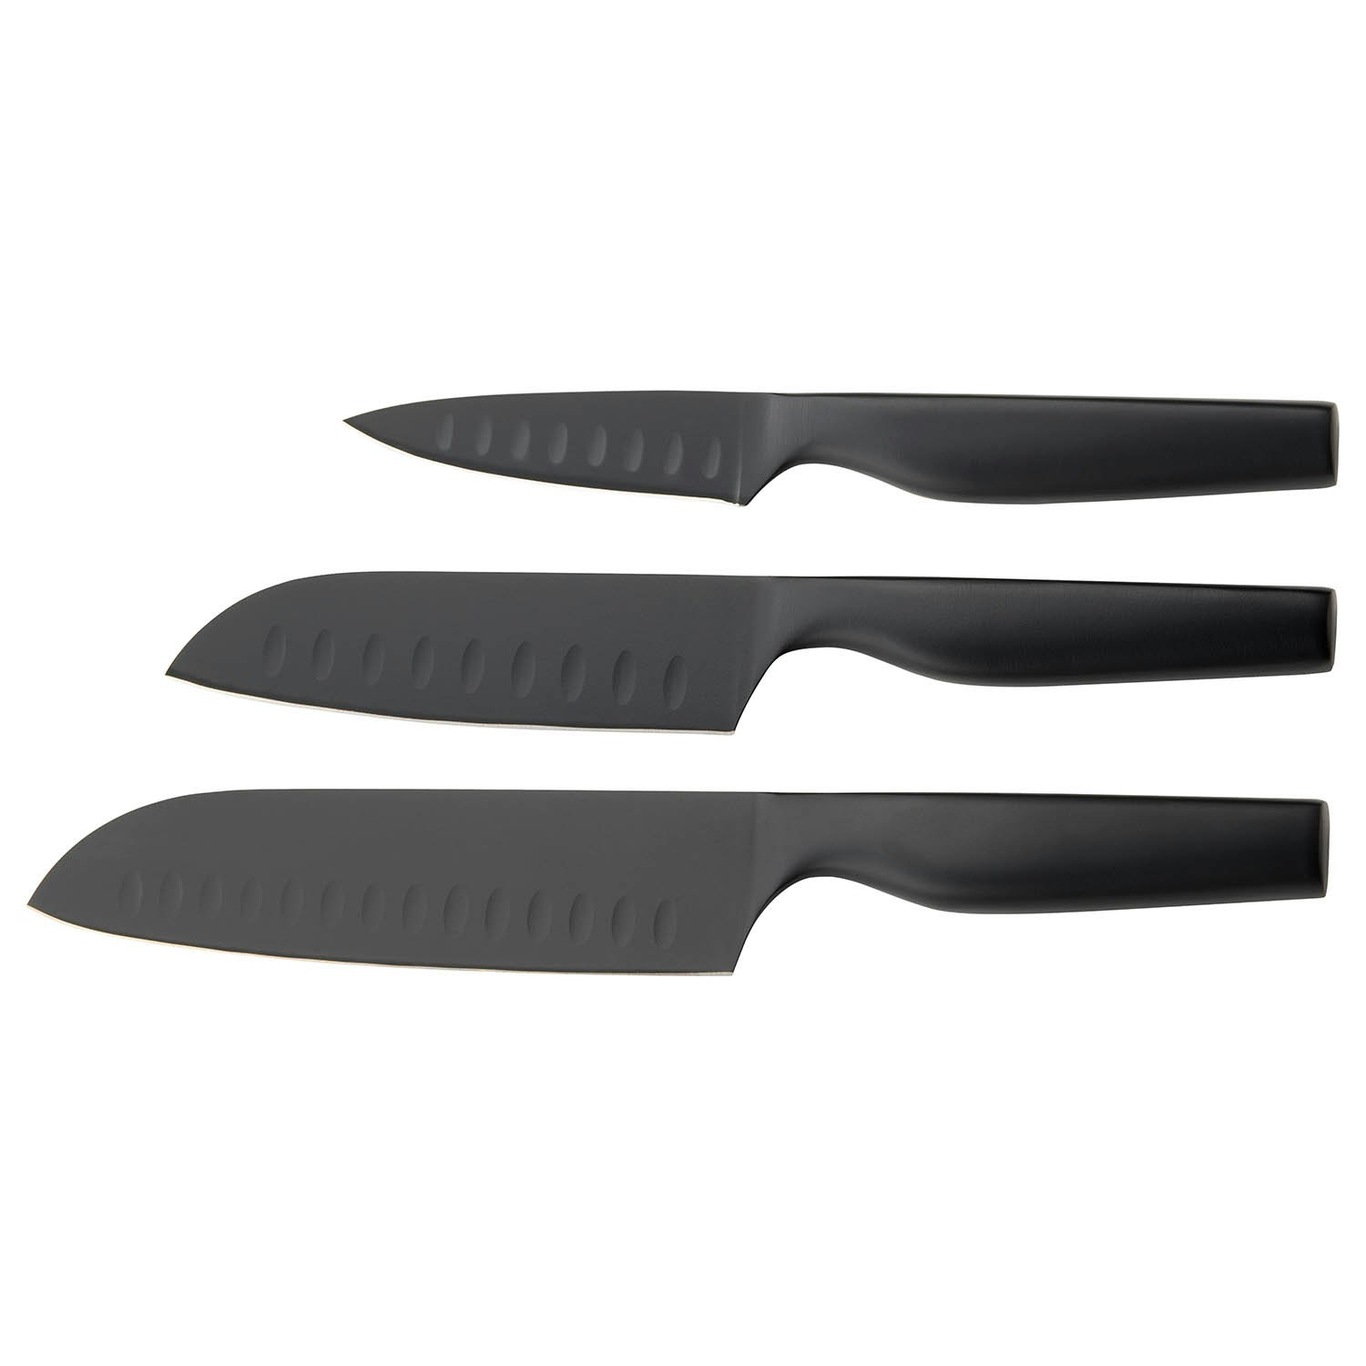 Sukai Knife Set, 3 Pieces